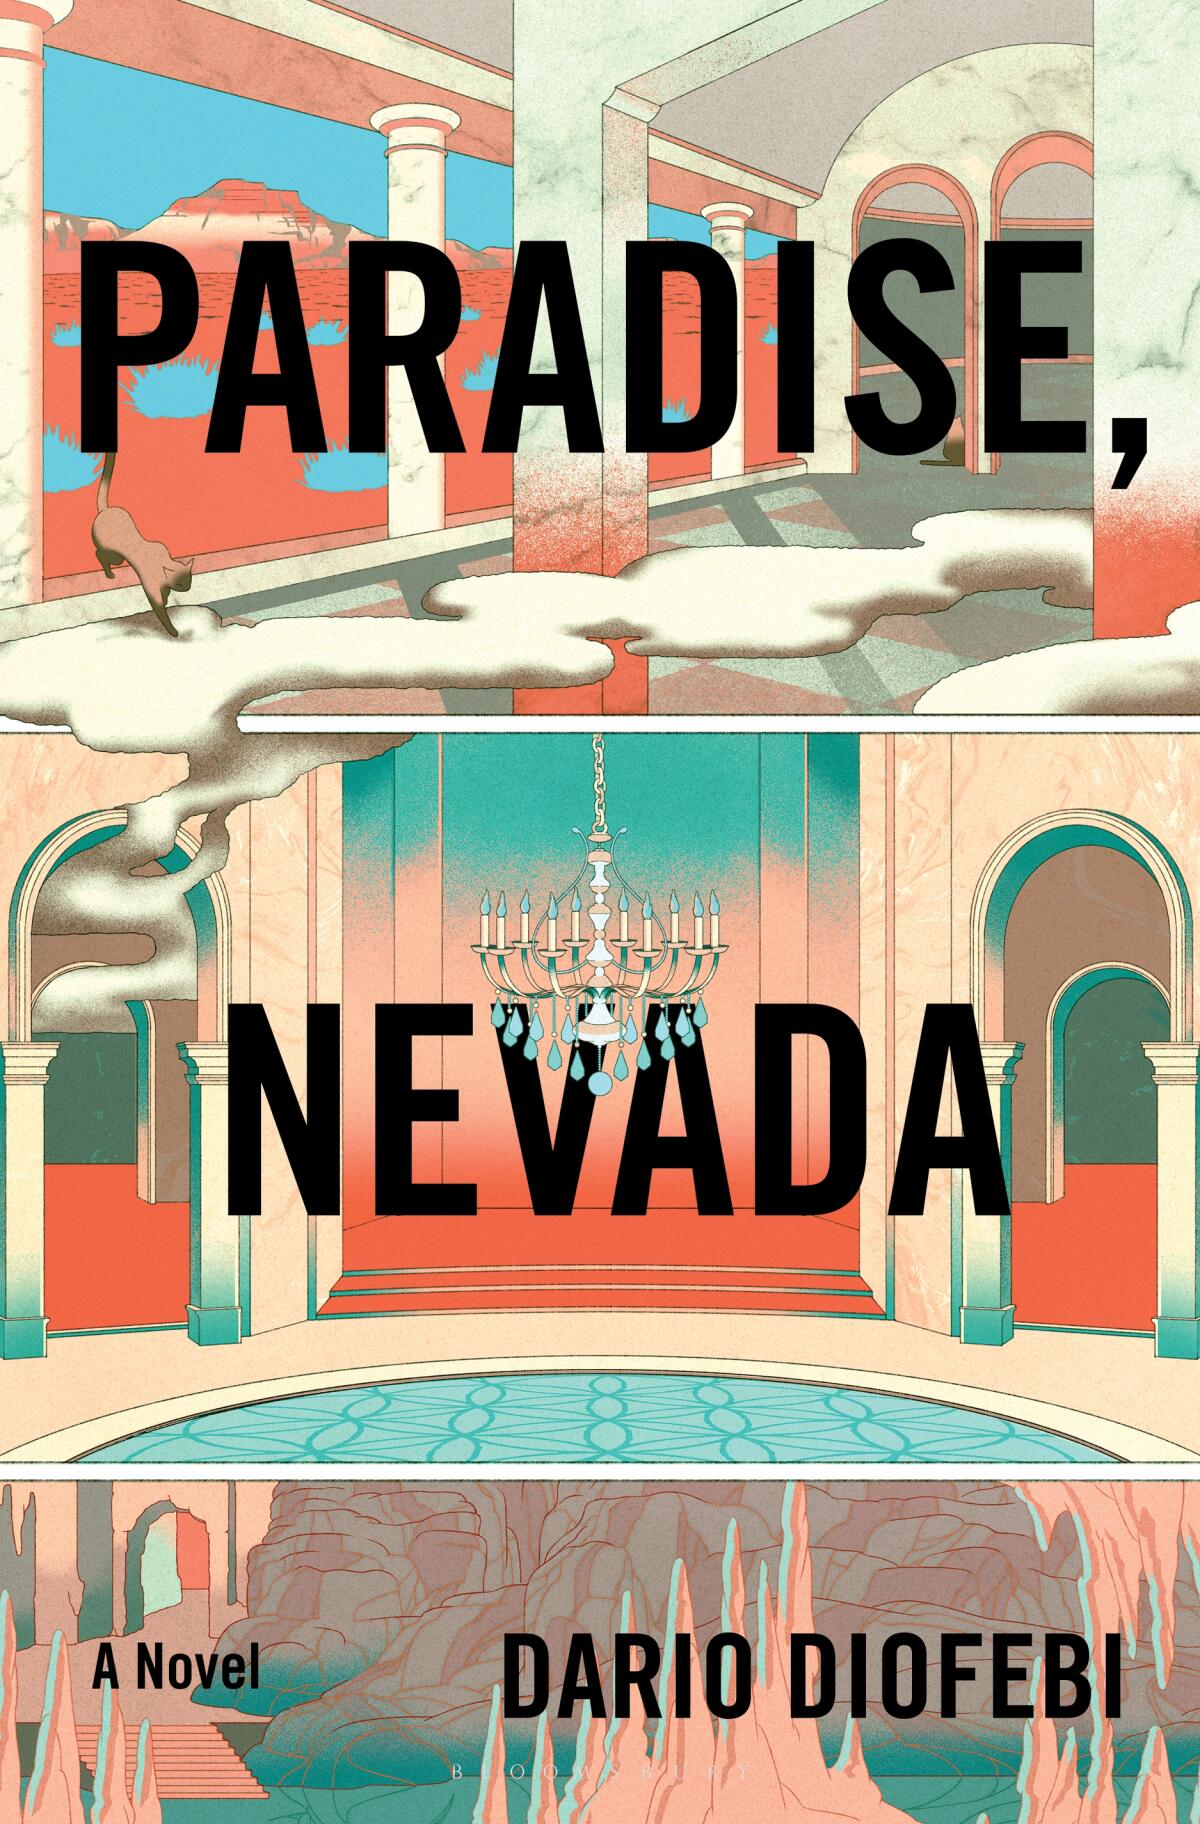 "Paraside, Nevada," by Dario Diofebi